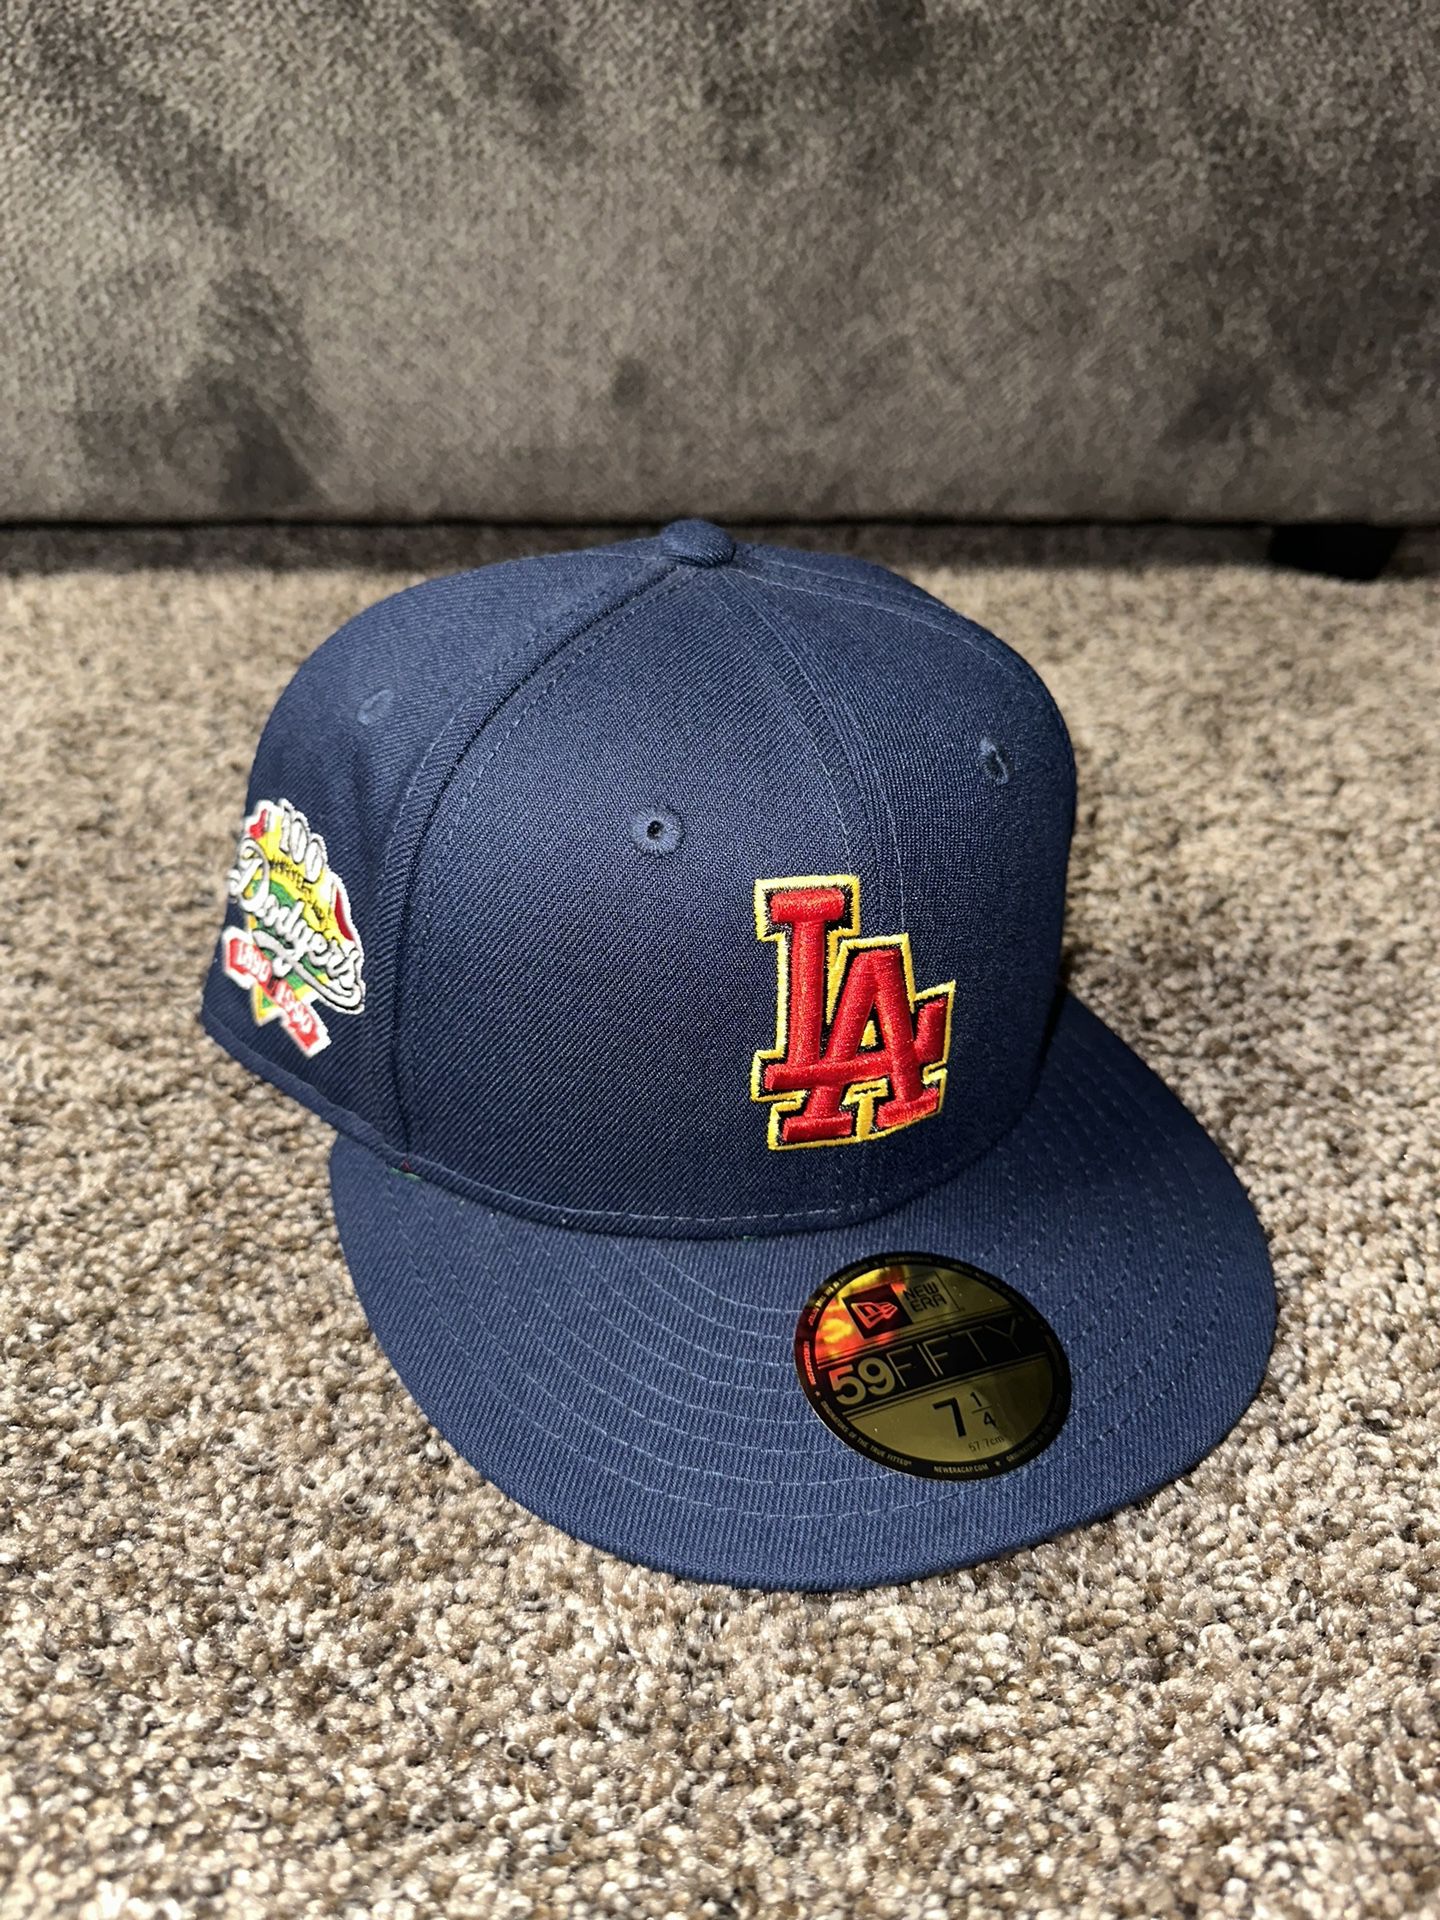 La Dodgers Jersey! for Sale in Pico Rivera, CA - OfferUp